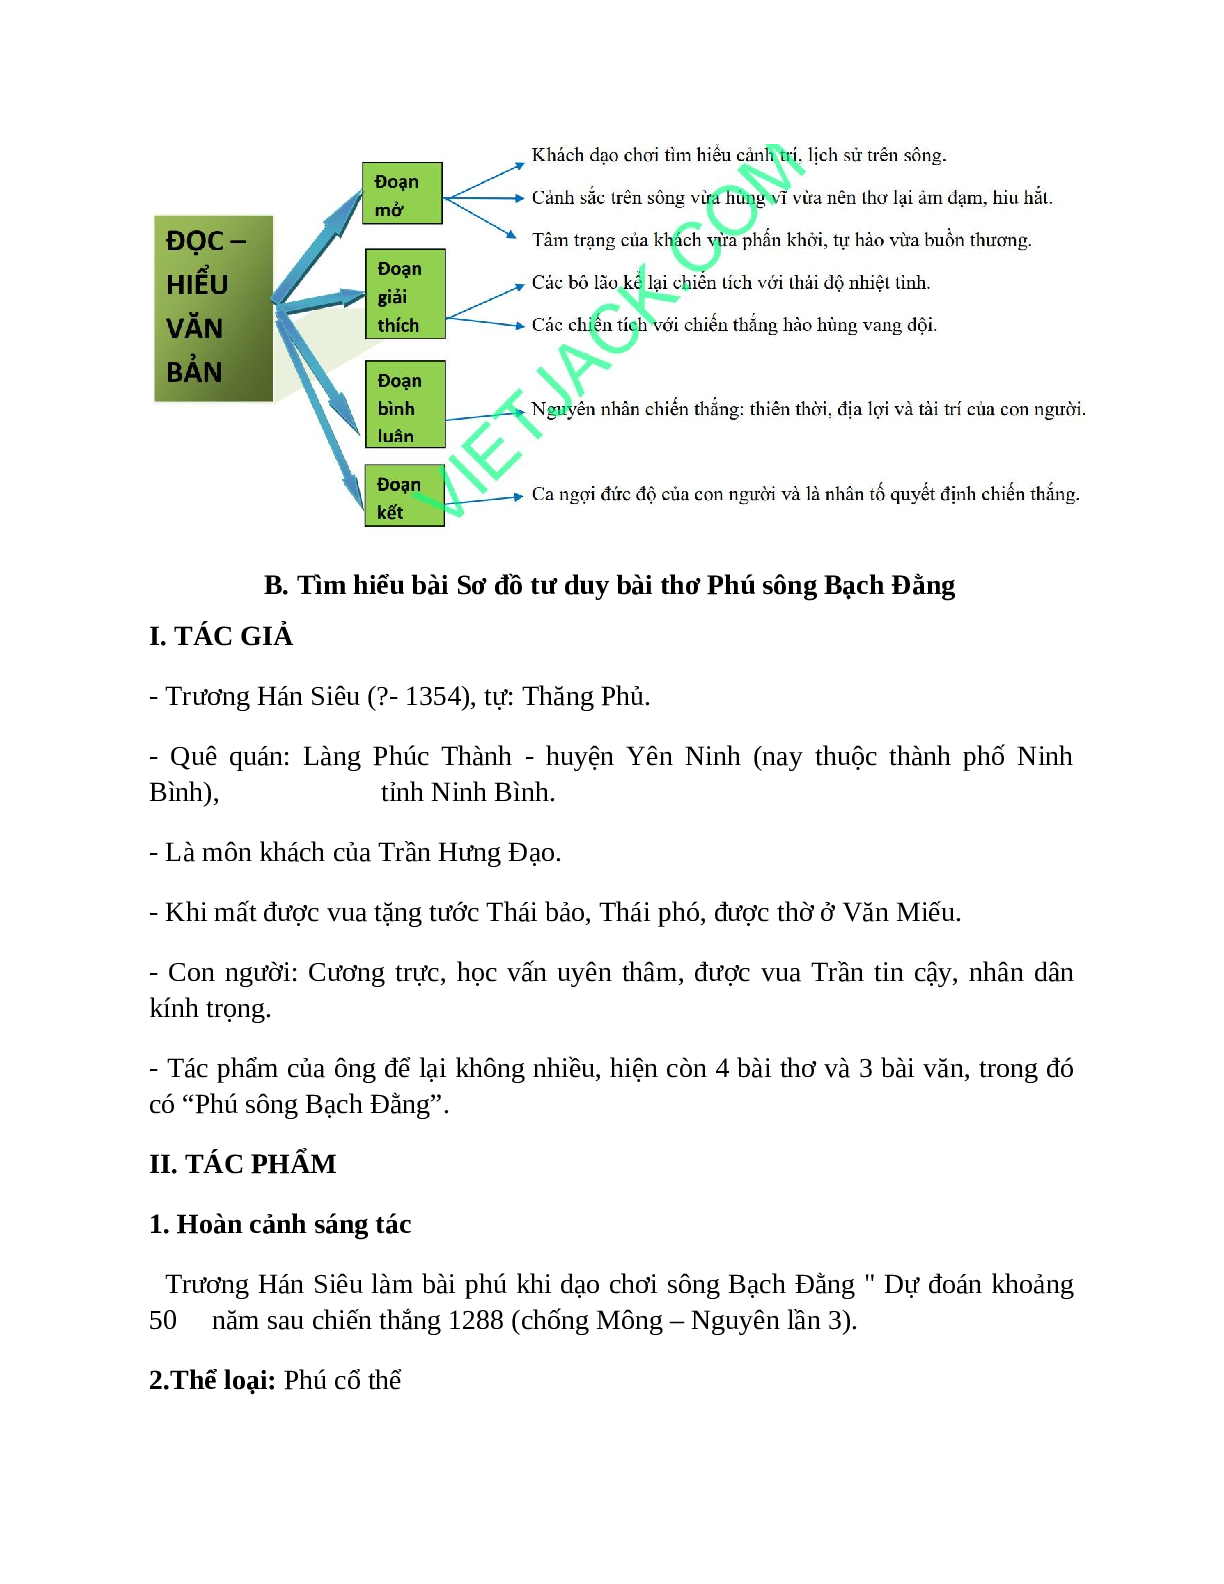 Sơ đồ tư duy bài Phú sông Bạch Đằng dễ nhớ, ngắn nhất - Ngữ văn lớp 10 (trang 2)